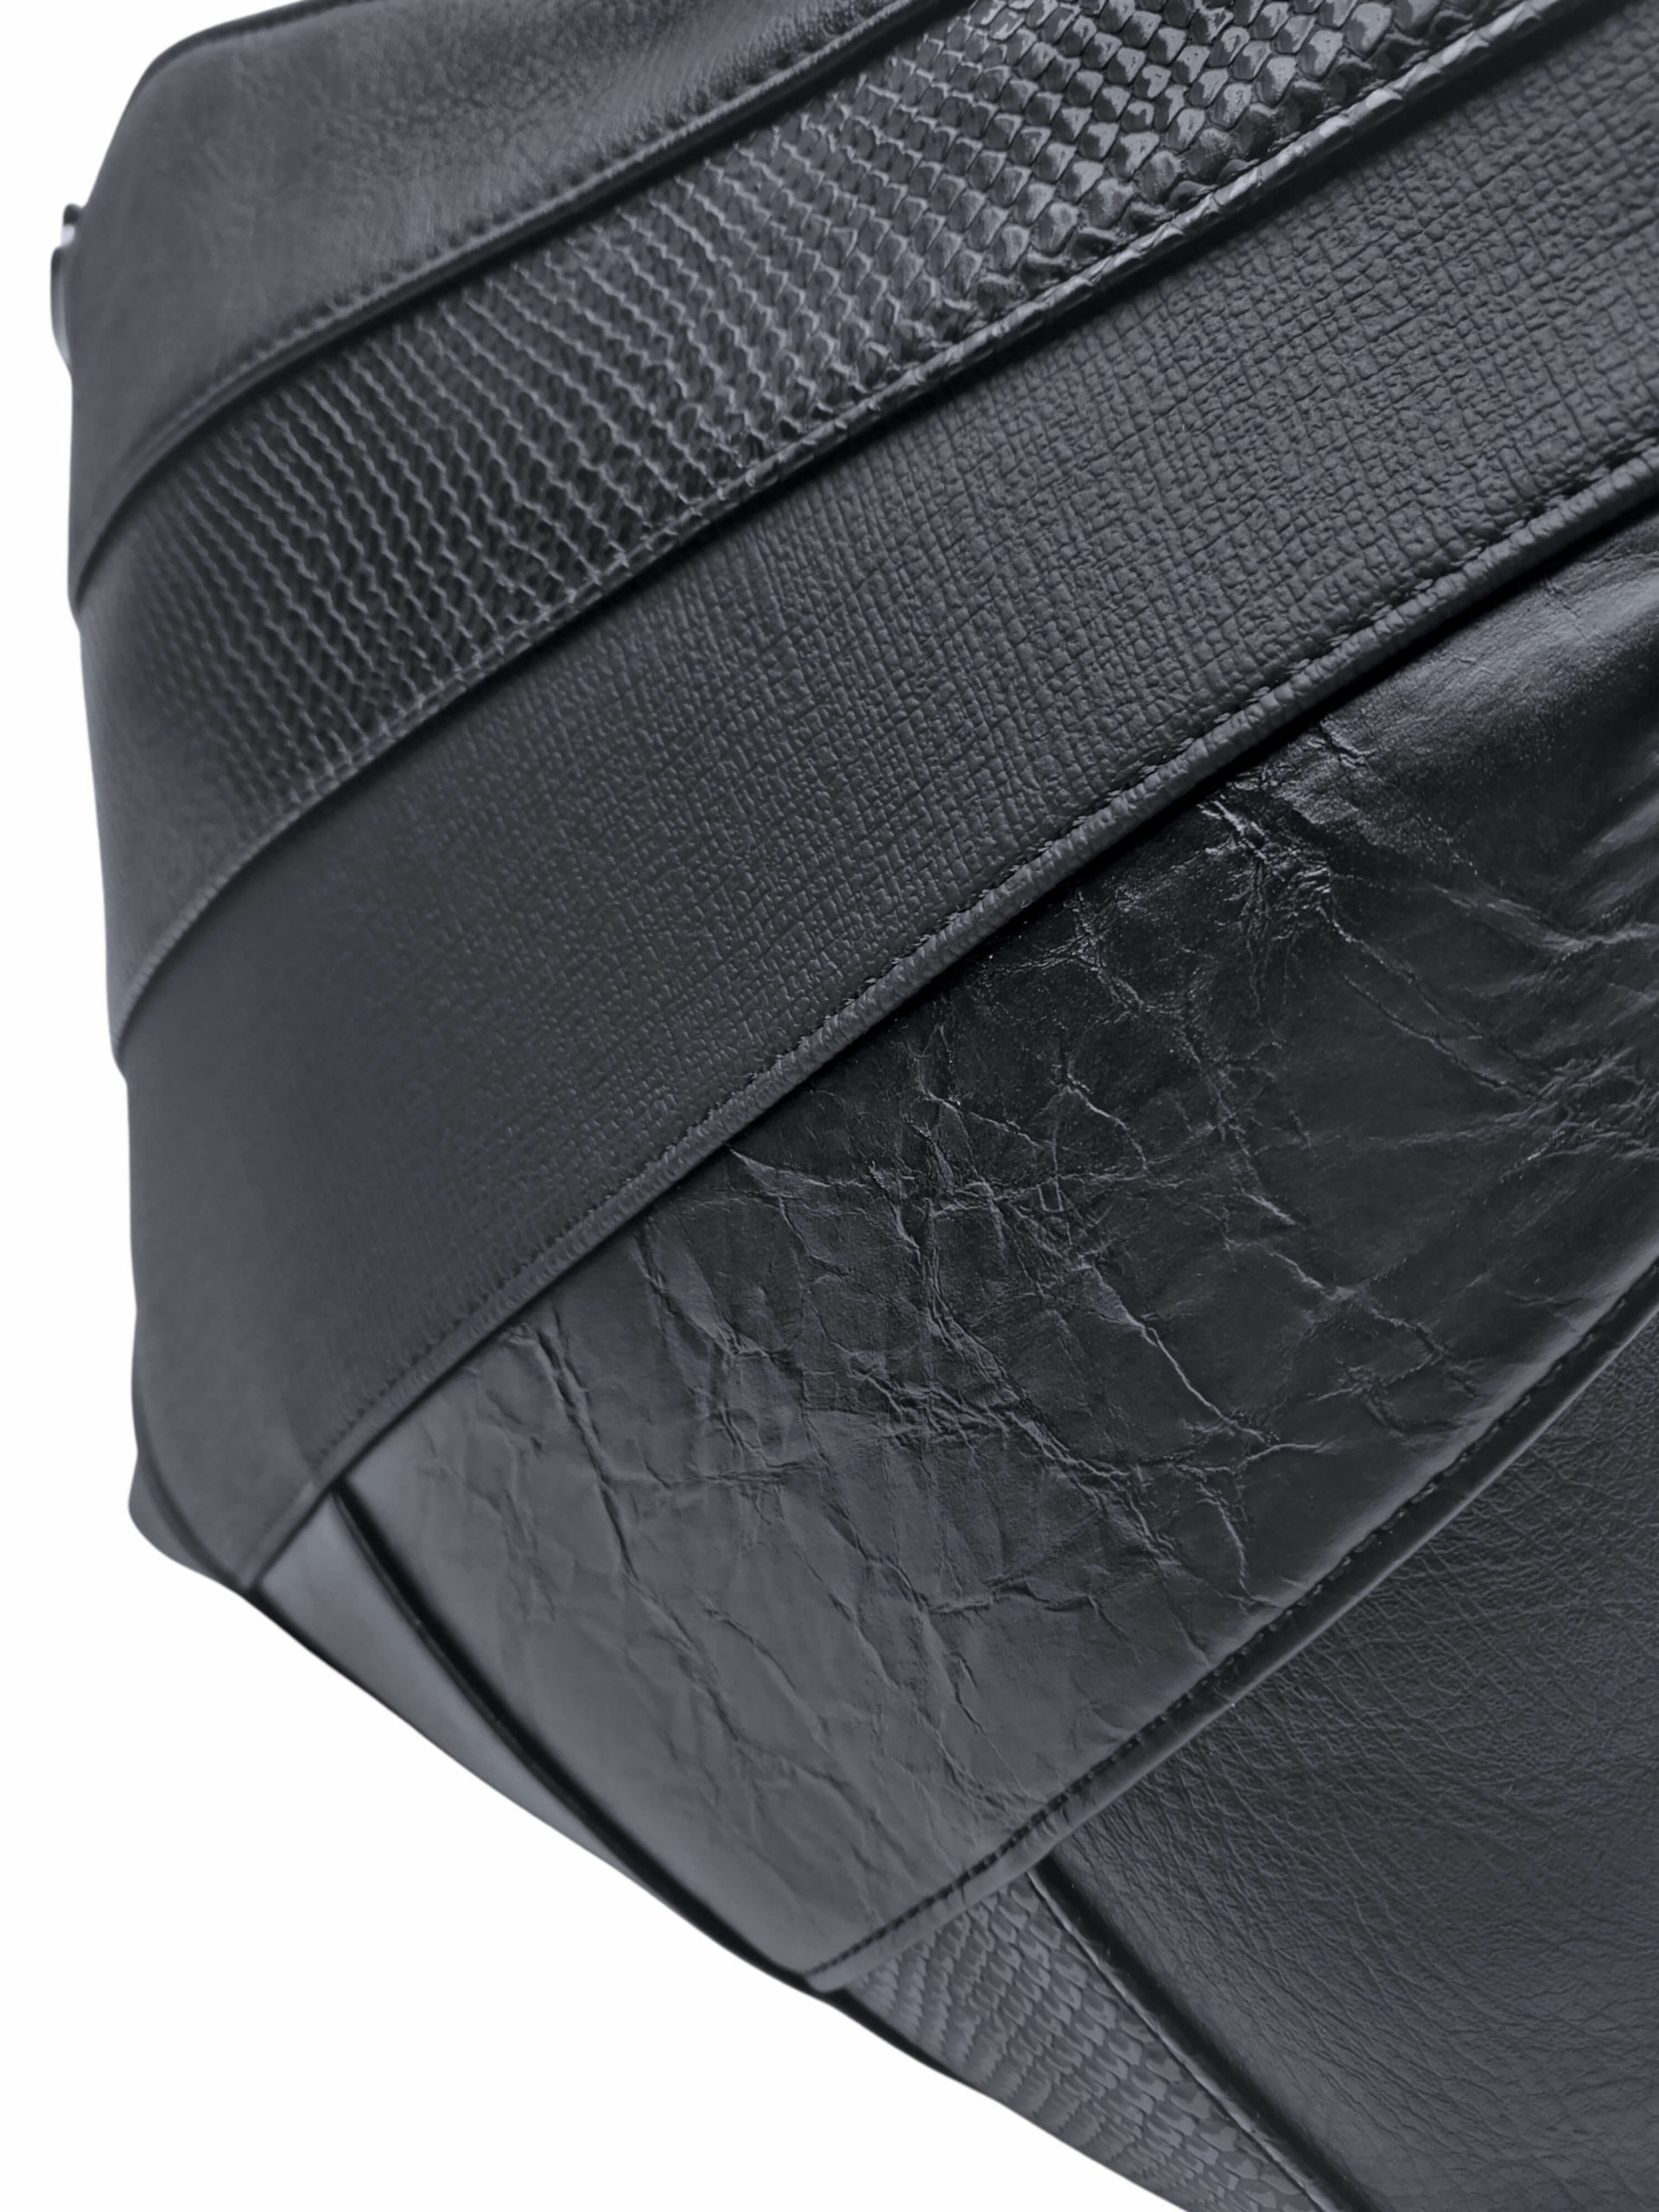 Černá crossbody kabelka s šikmými vzory, Tapple, H17381, detail crossbody kabelky